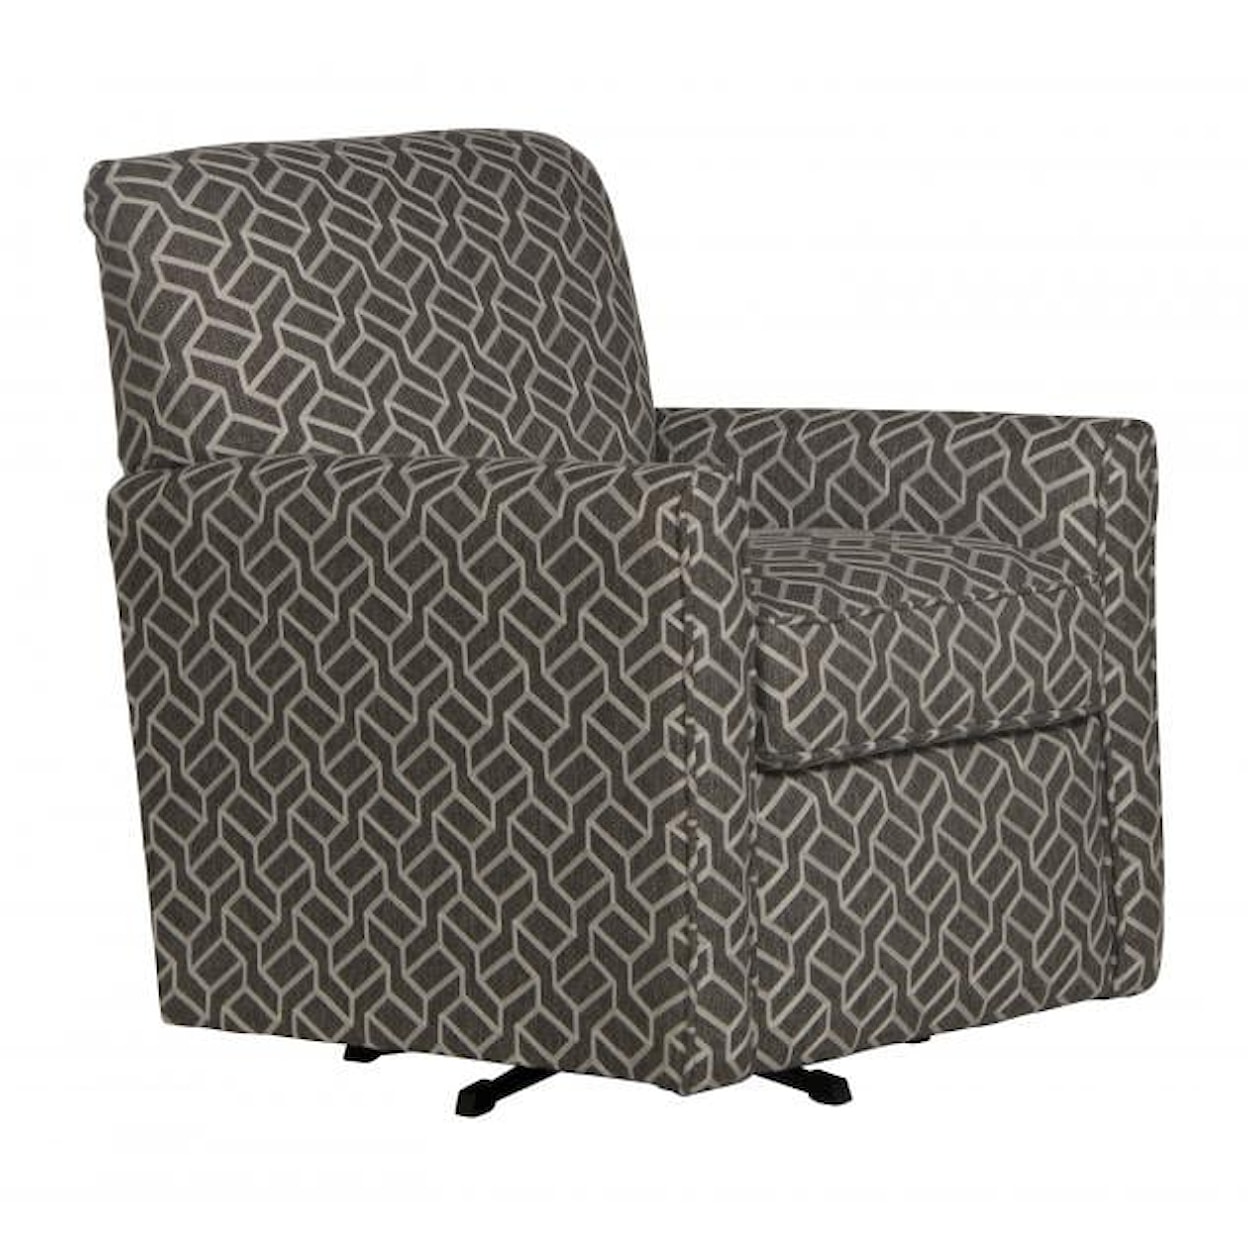 Carolina Furniture 3478 Cutler Swivel Chair